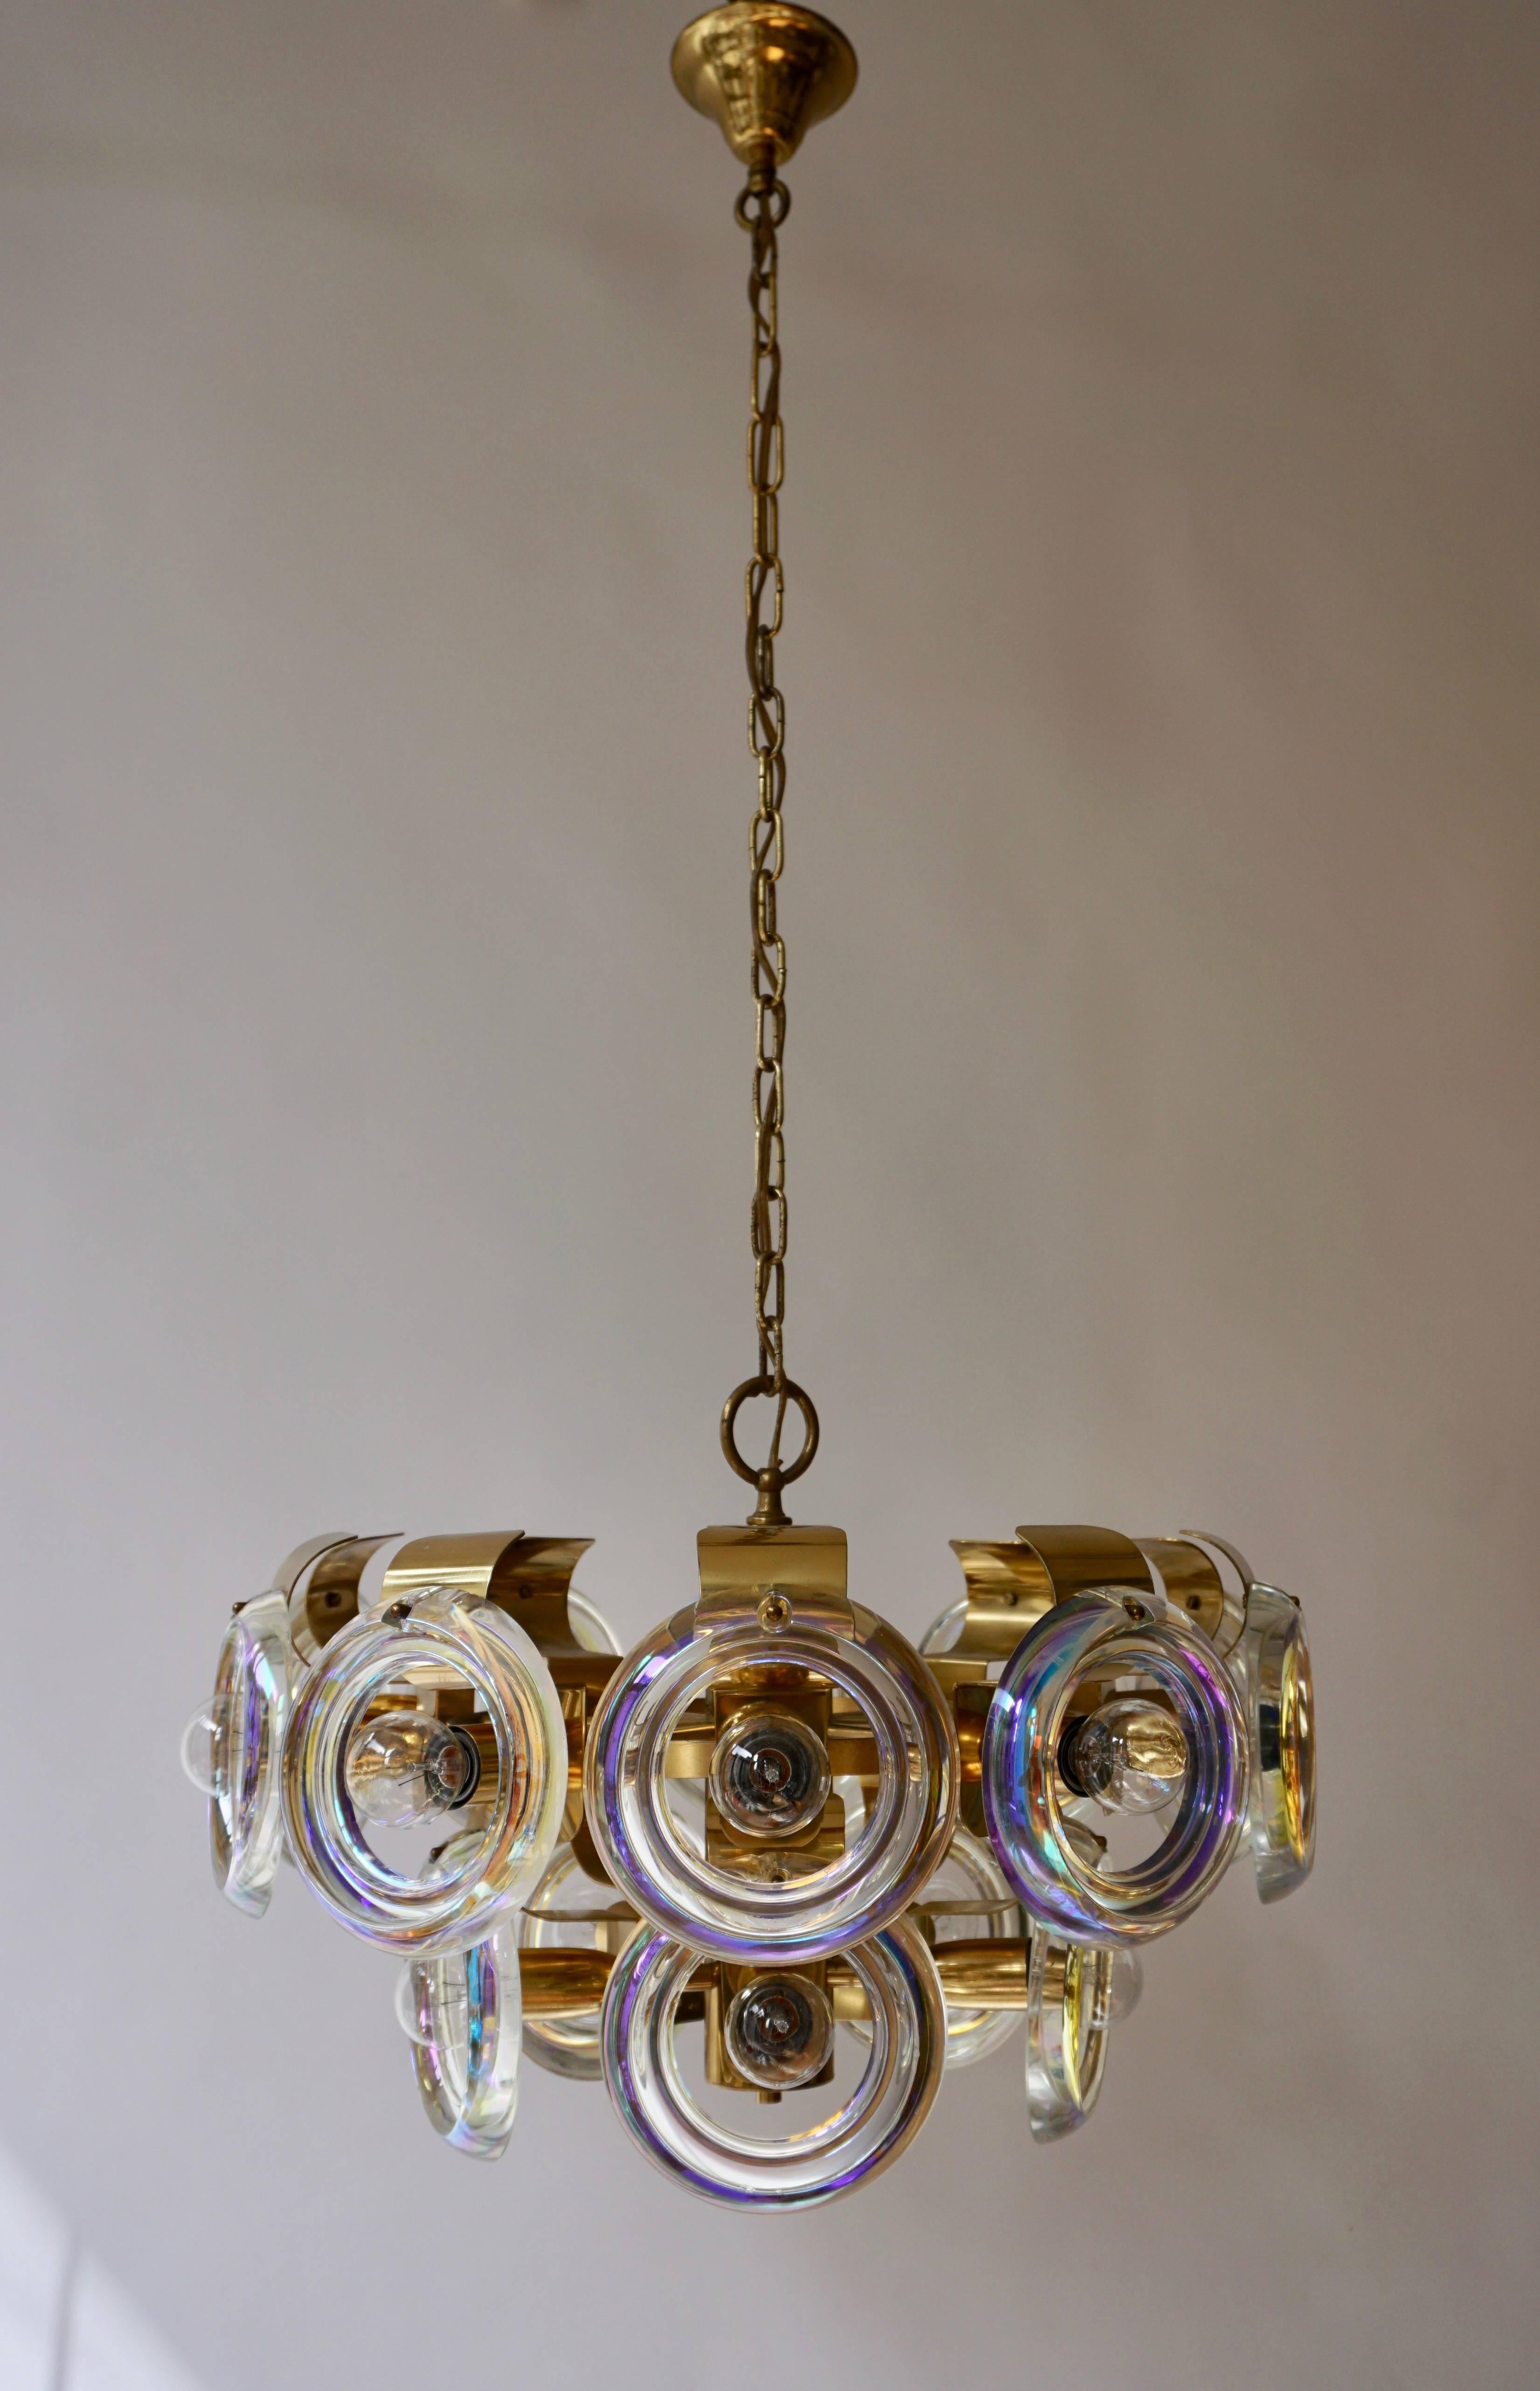 Le lustre italien en verre de Murano crée une lumière chaleureuse et confortable. La lampe comporte quinze sources lumineuses de 60W maximum.
Les fils peuvent être fabriqués à la longueur souhaitée.
Mesures : Diamètre 50 cm.
Hauteur de l'appareil